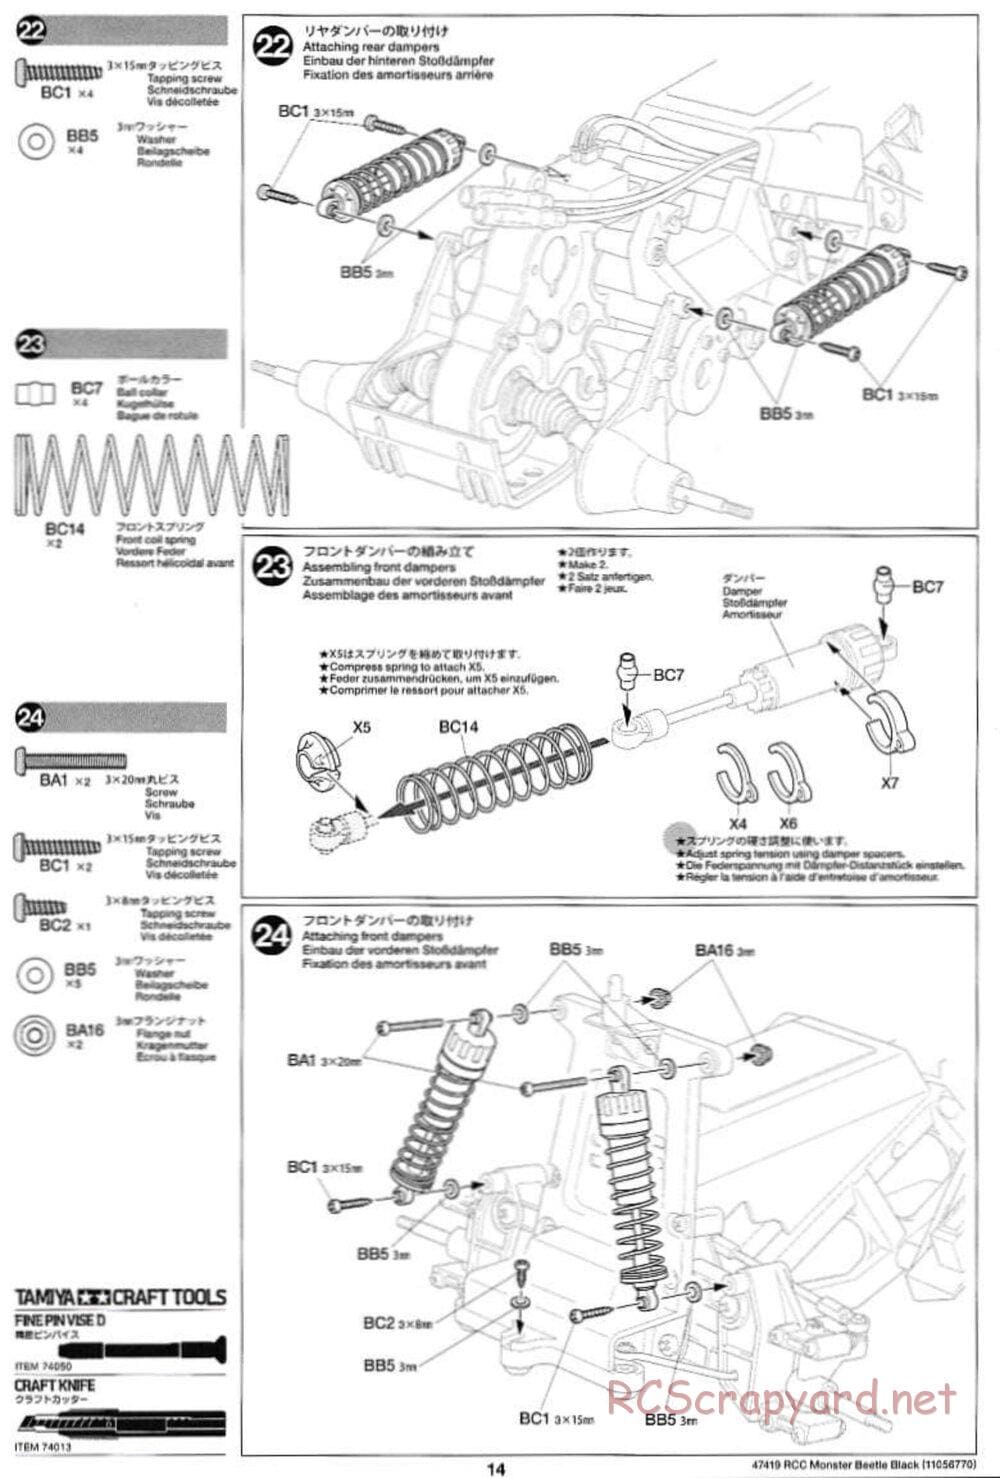 Tamiya - Monster Beetle Black Edition - ORV Chassis - Manual - Page 14